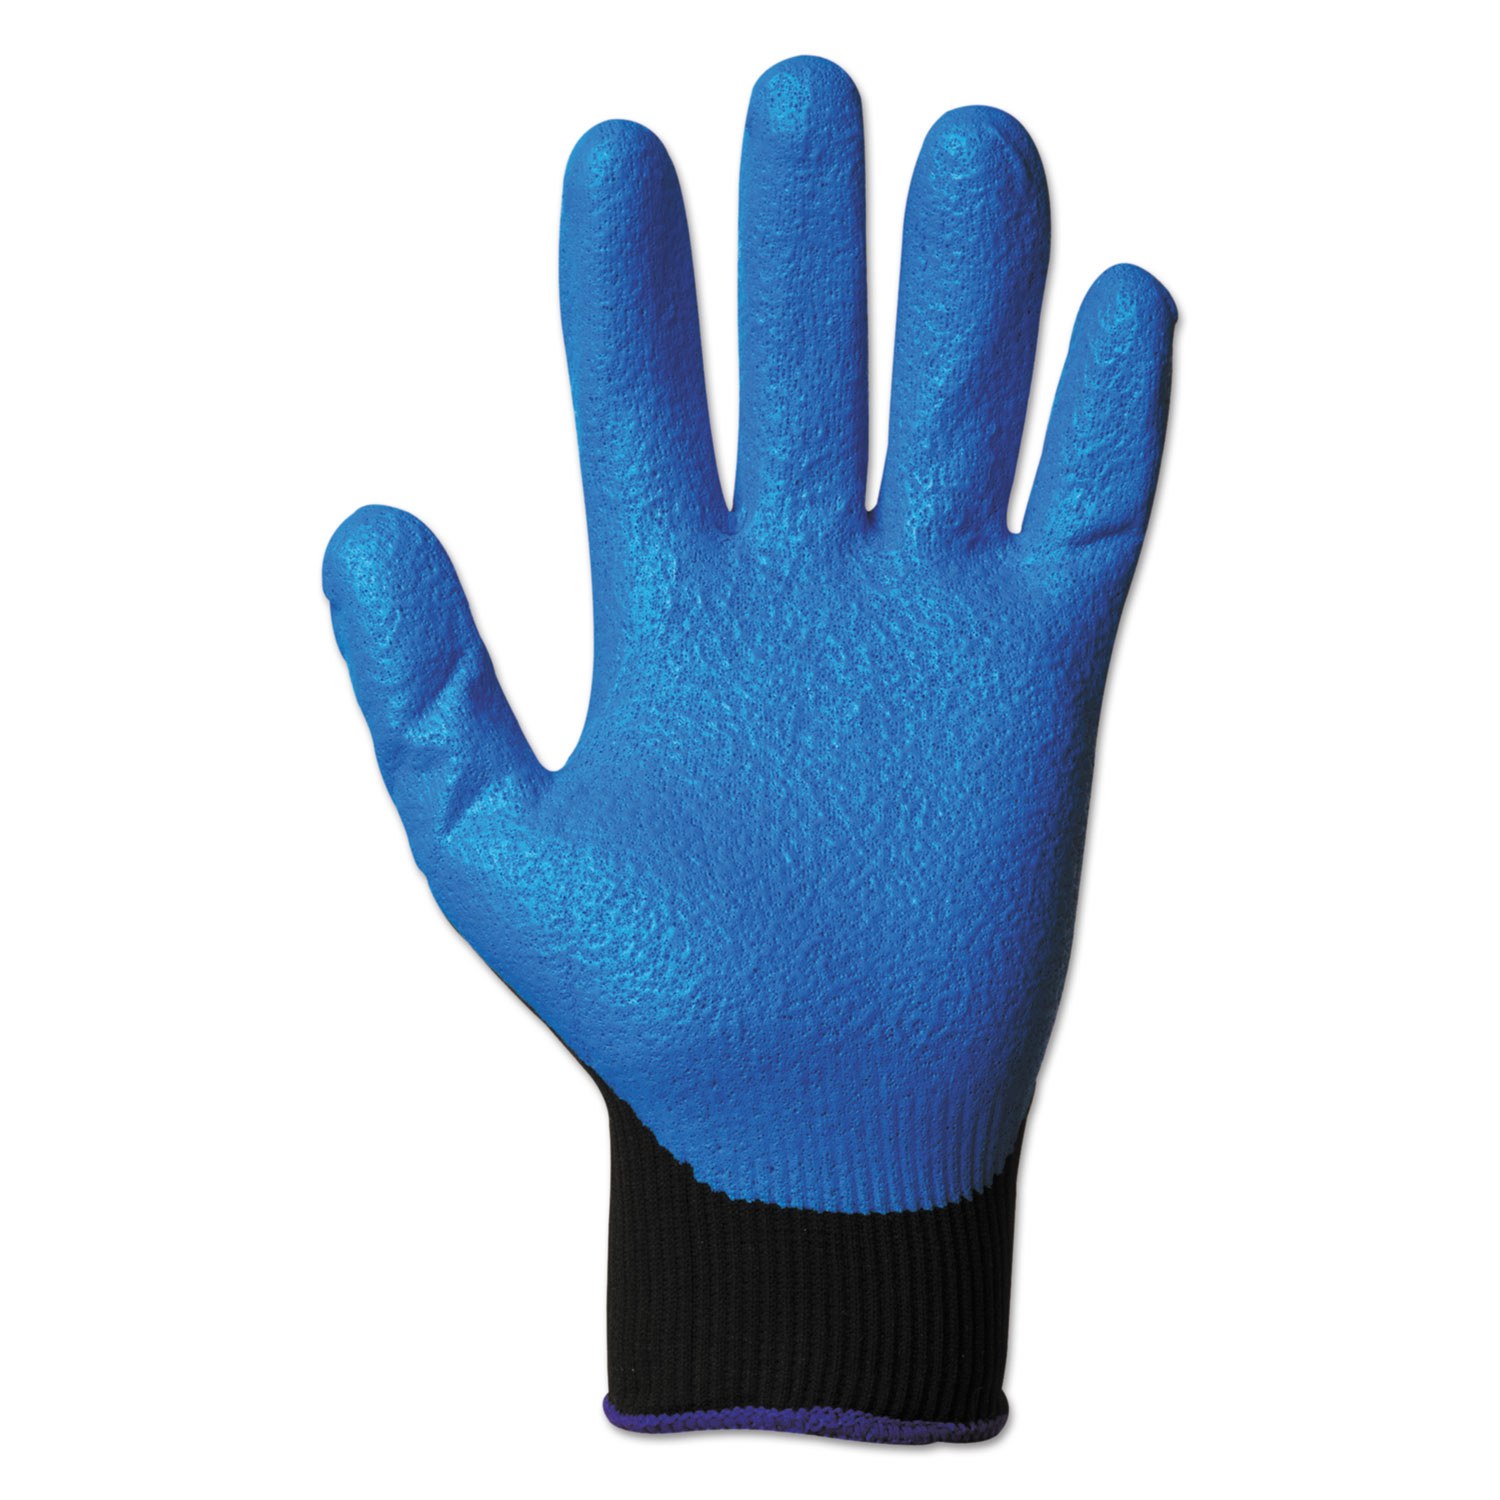 KleenGuard G40 Nitrile Coated Gloves, 230 mm Length, Medium/Size 8, Blue, 12 Pairs -KCC40226 - image 2 of 6